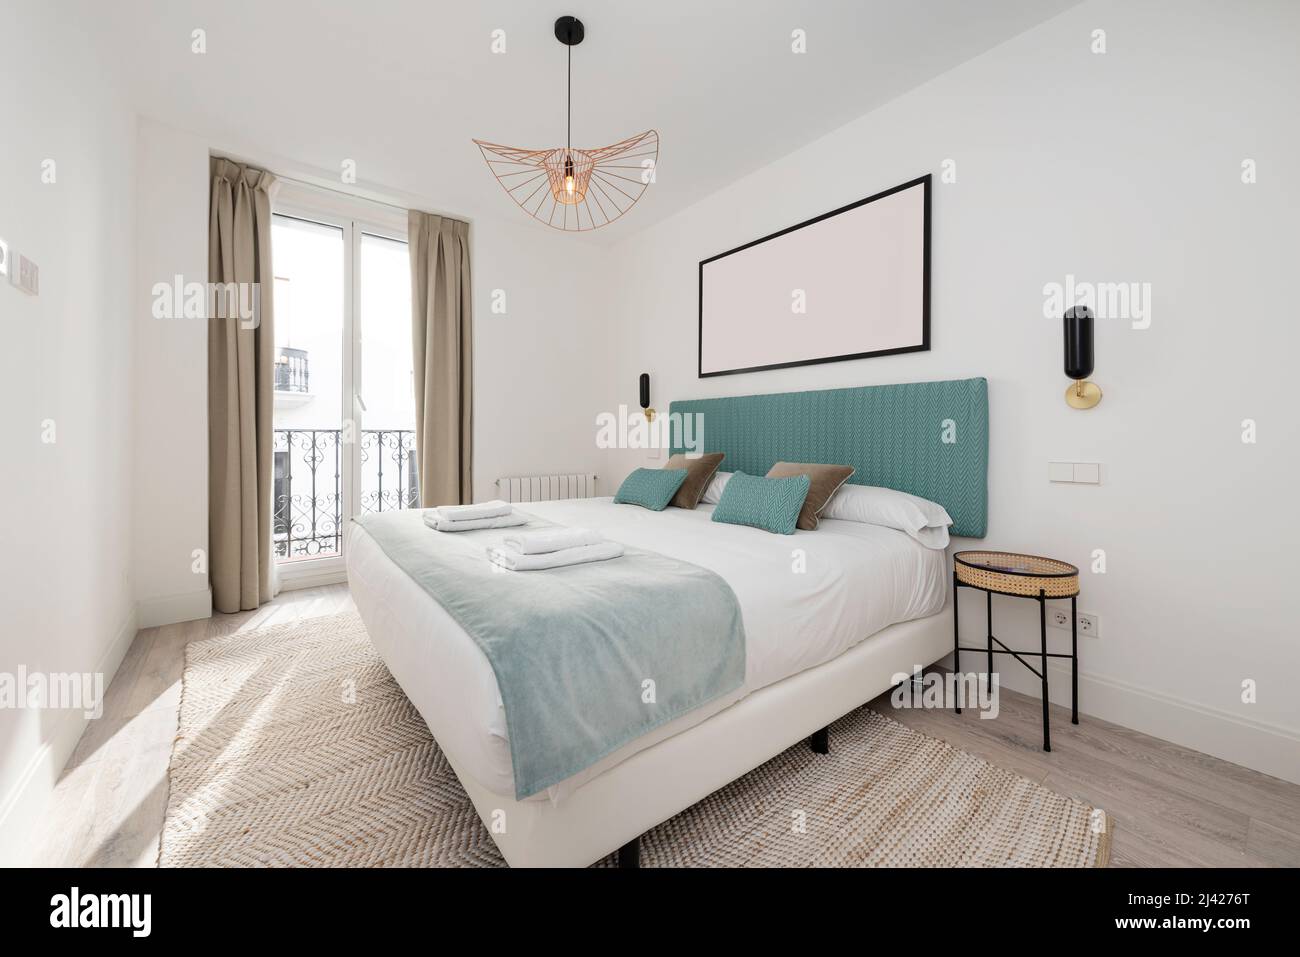 Chambre avec grand lit double, tête de lit rembourrée en tissu bleu clair, couverture en velours assortie, tapis en denim assorti et balcon avec rideaux Banque D'Images